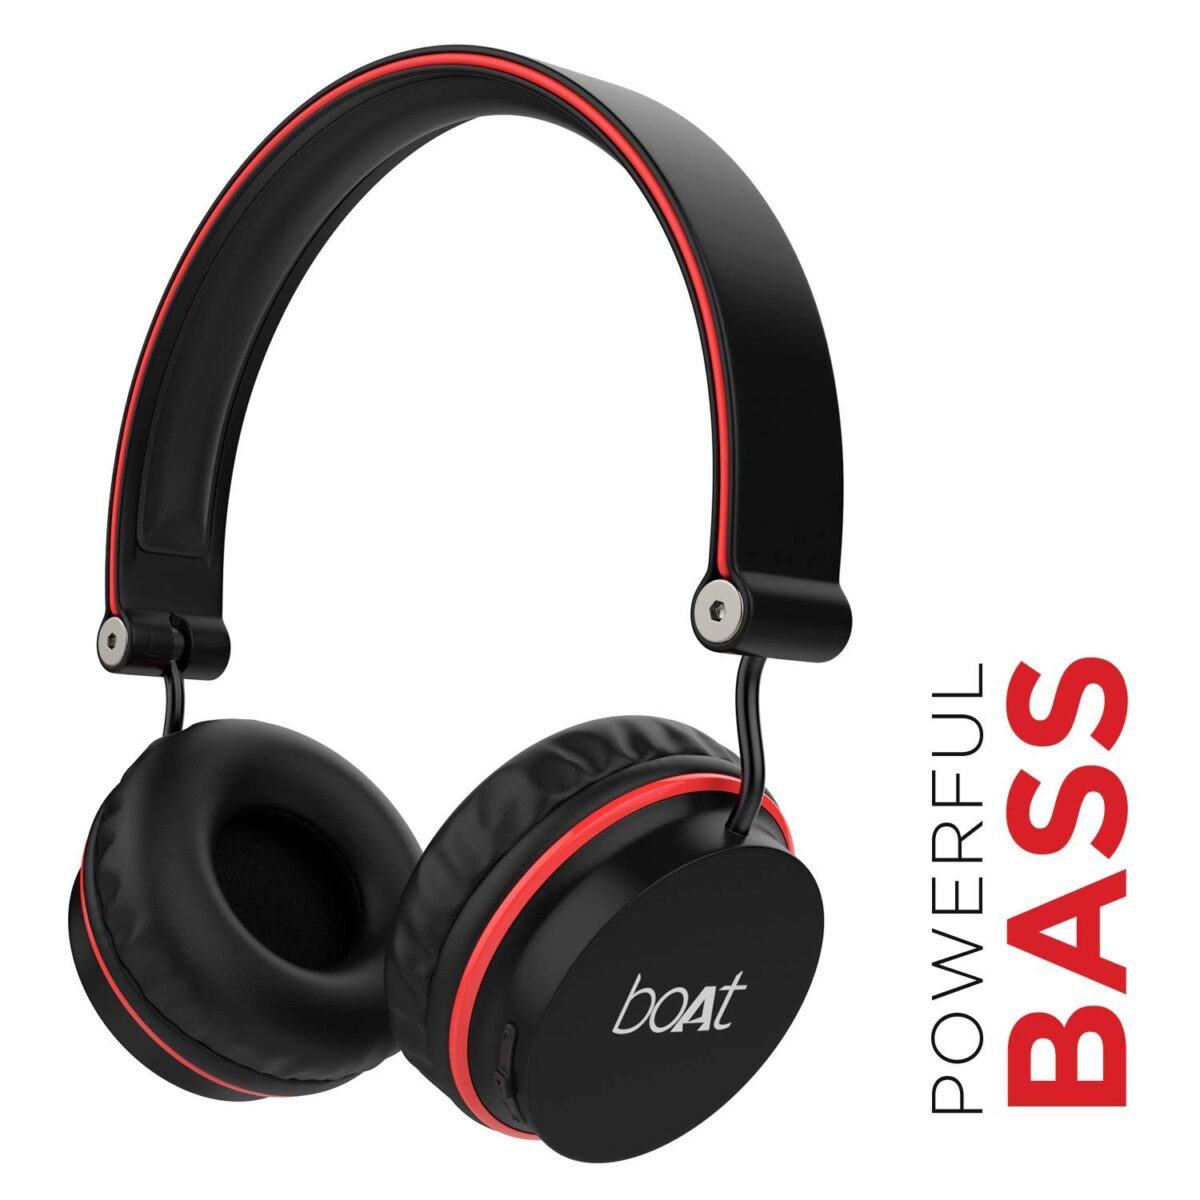 Boat-Rockerz-400-On-Ear-Wireless-Bluetooth-Headphones-Black-Red